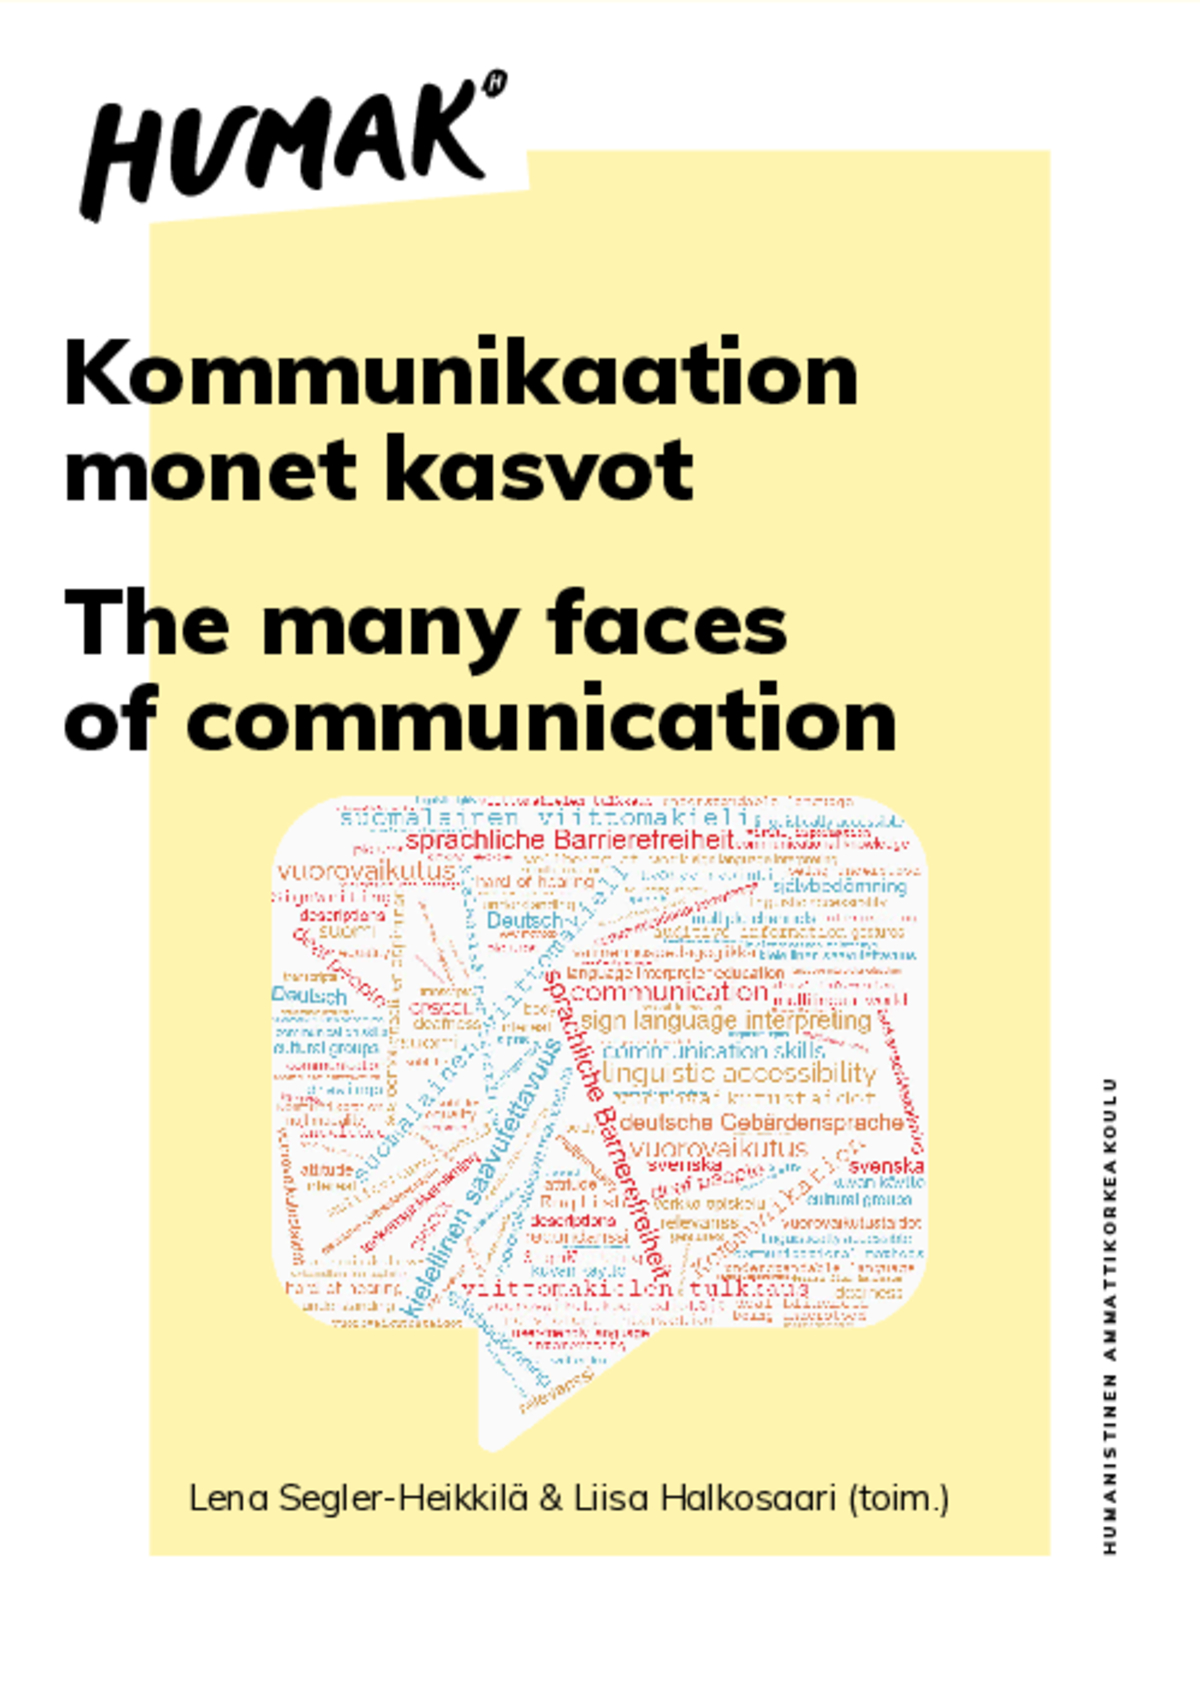 Lena Segler-Heikkilä & Liisa Halkosaari (toim.) Kommunikaation monet kasvot | The many faces of communication